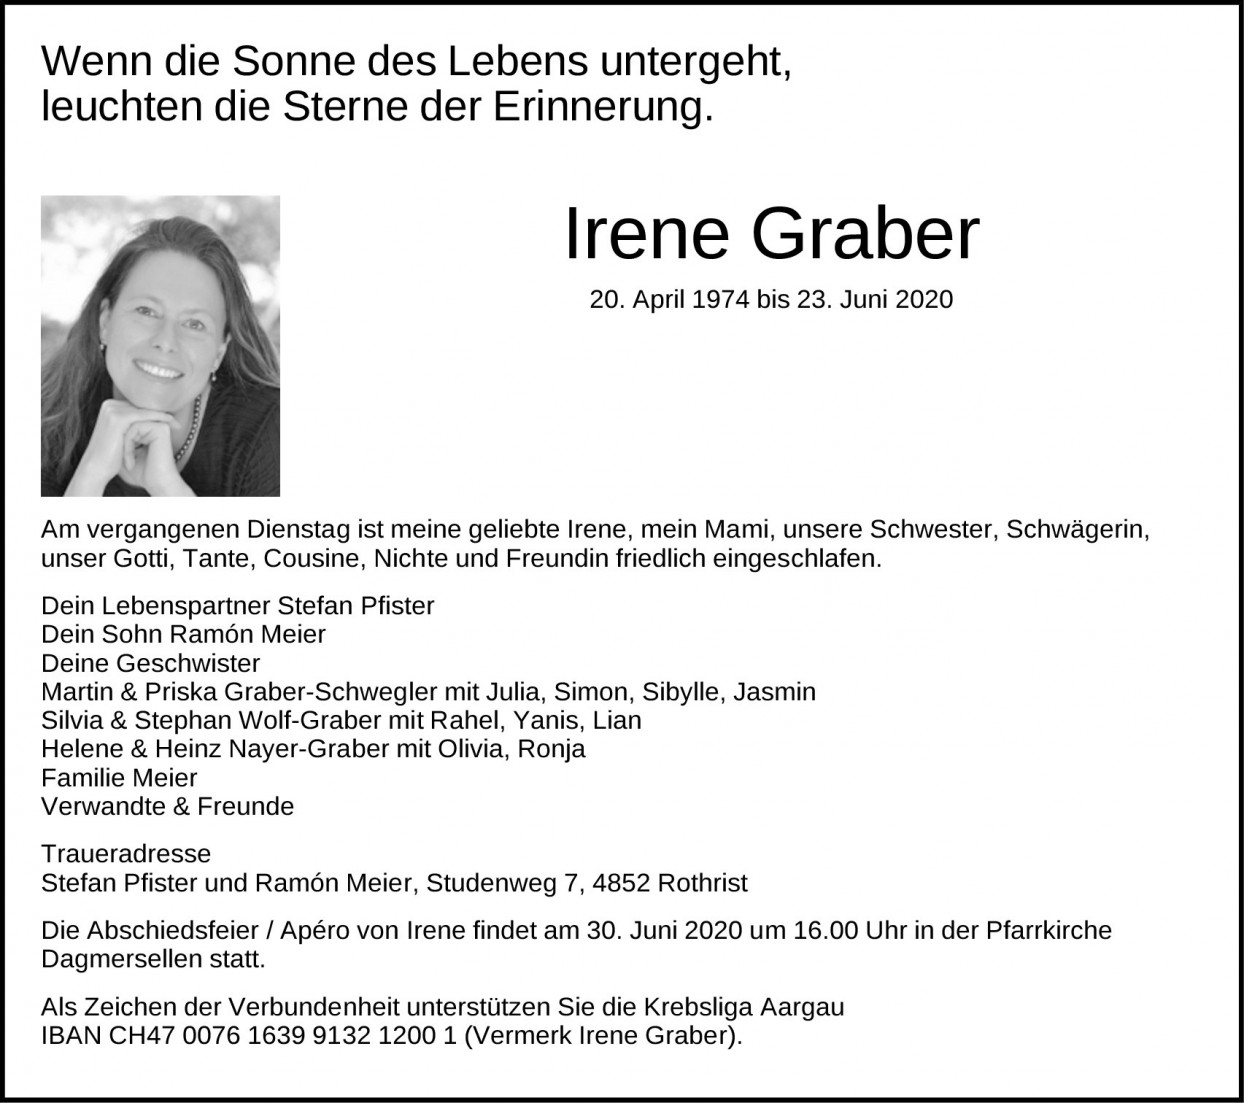 Irene Graber